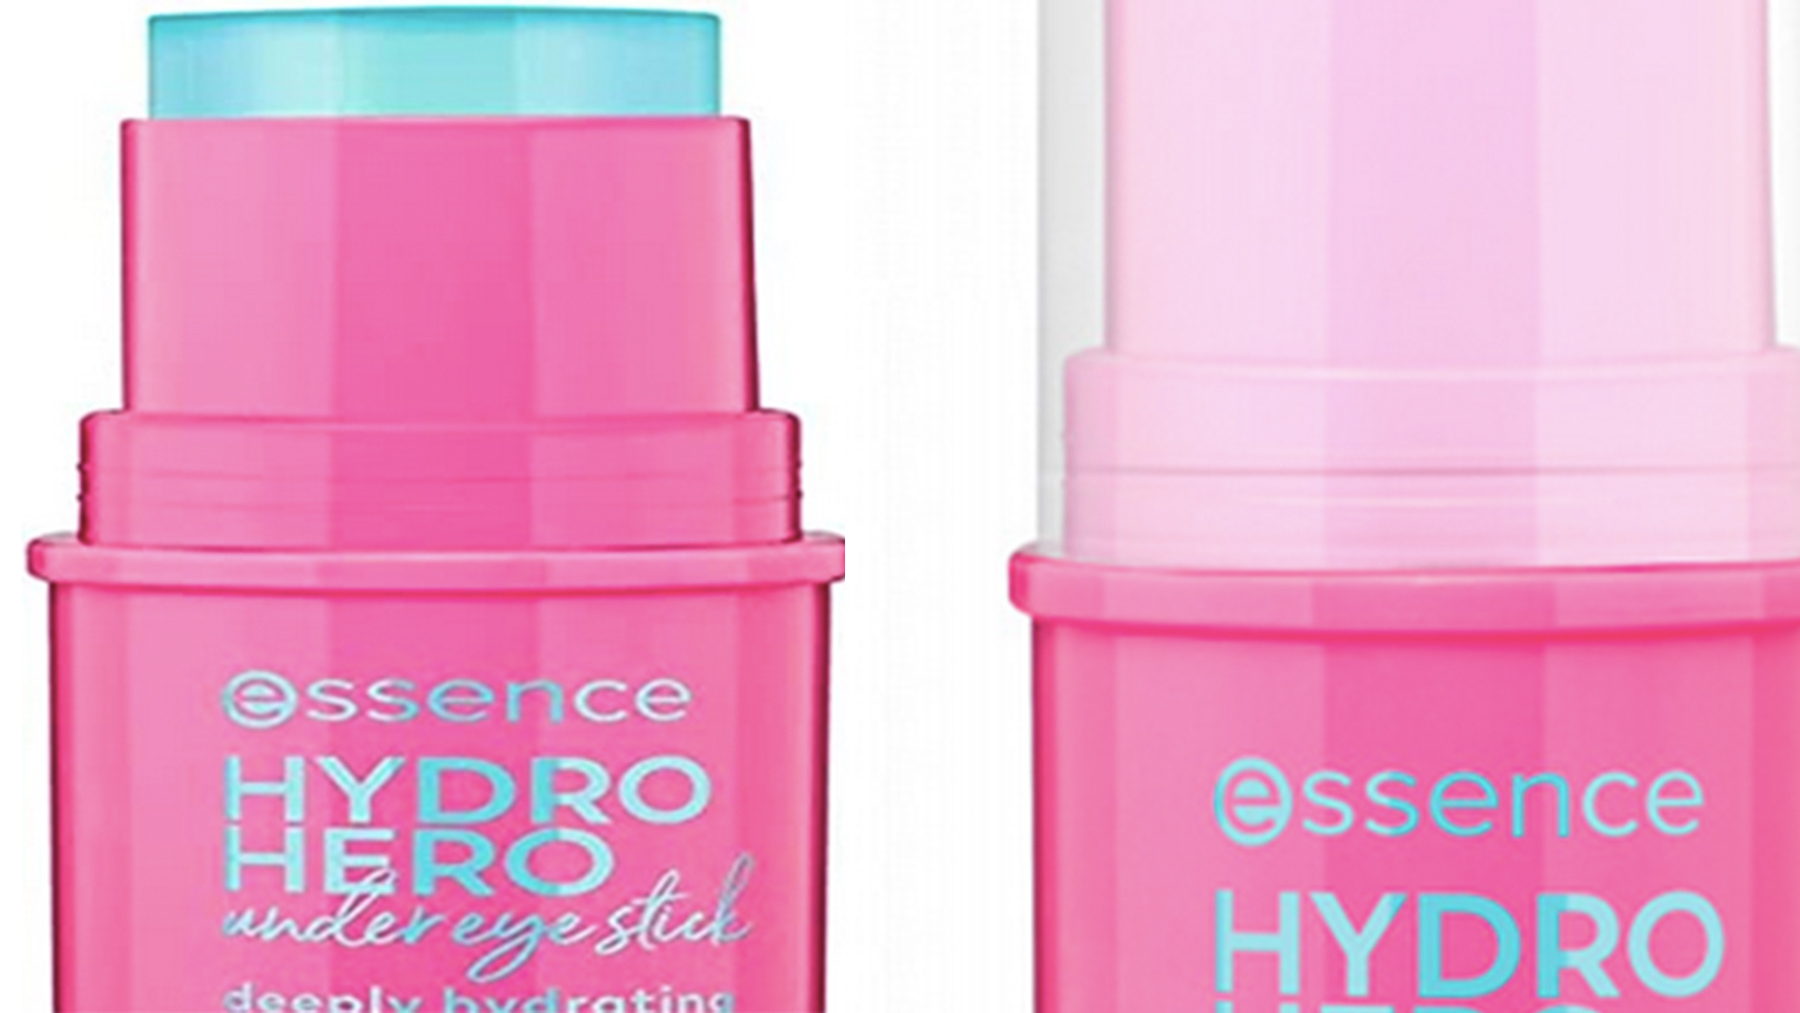 Comprar essence HYDRO HERO stick para los ojos online